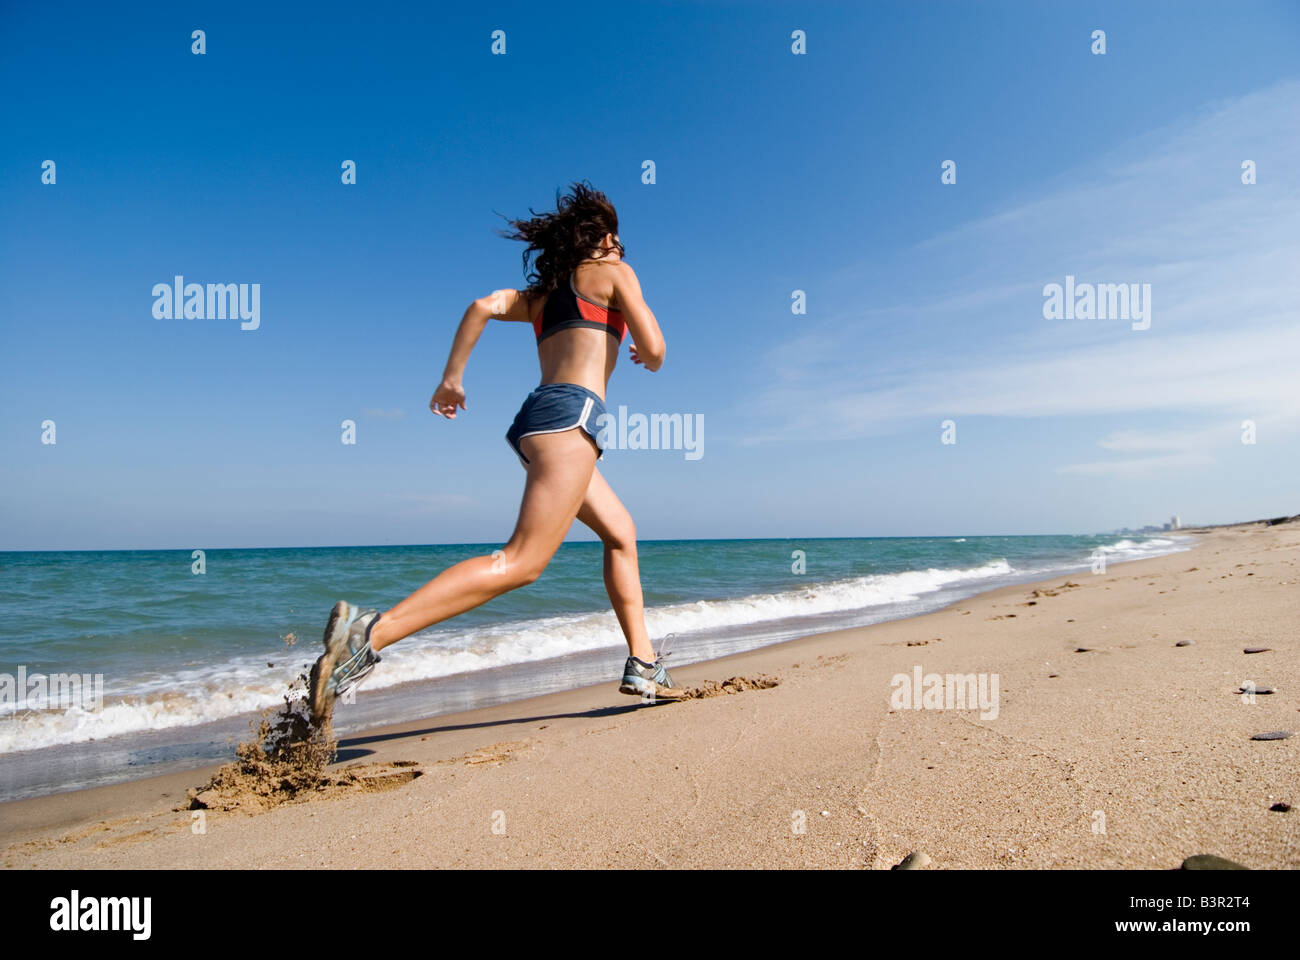 Parution du modèle fit young woman running le long du littoral d'une plage de sable vide Banque D'Images